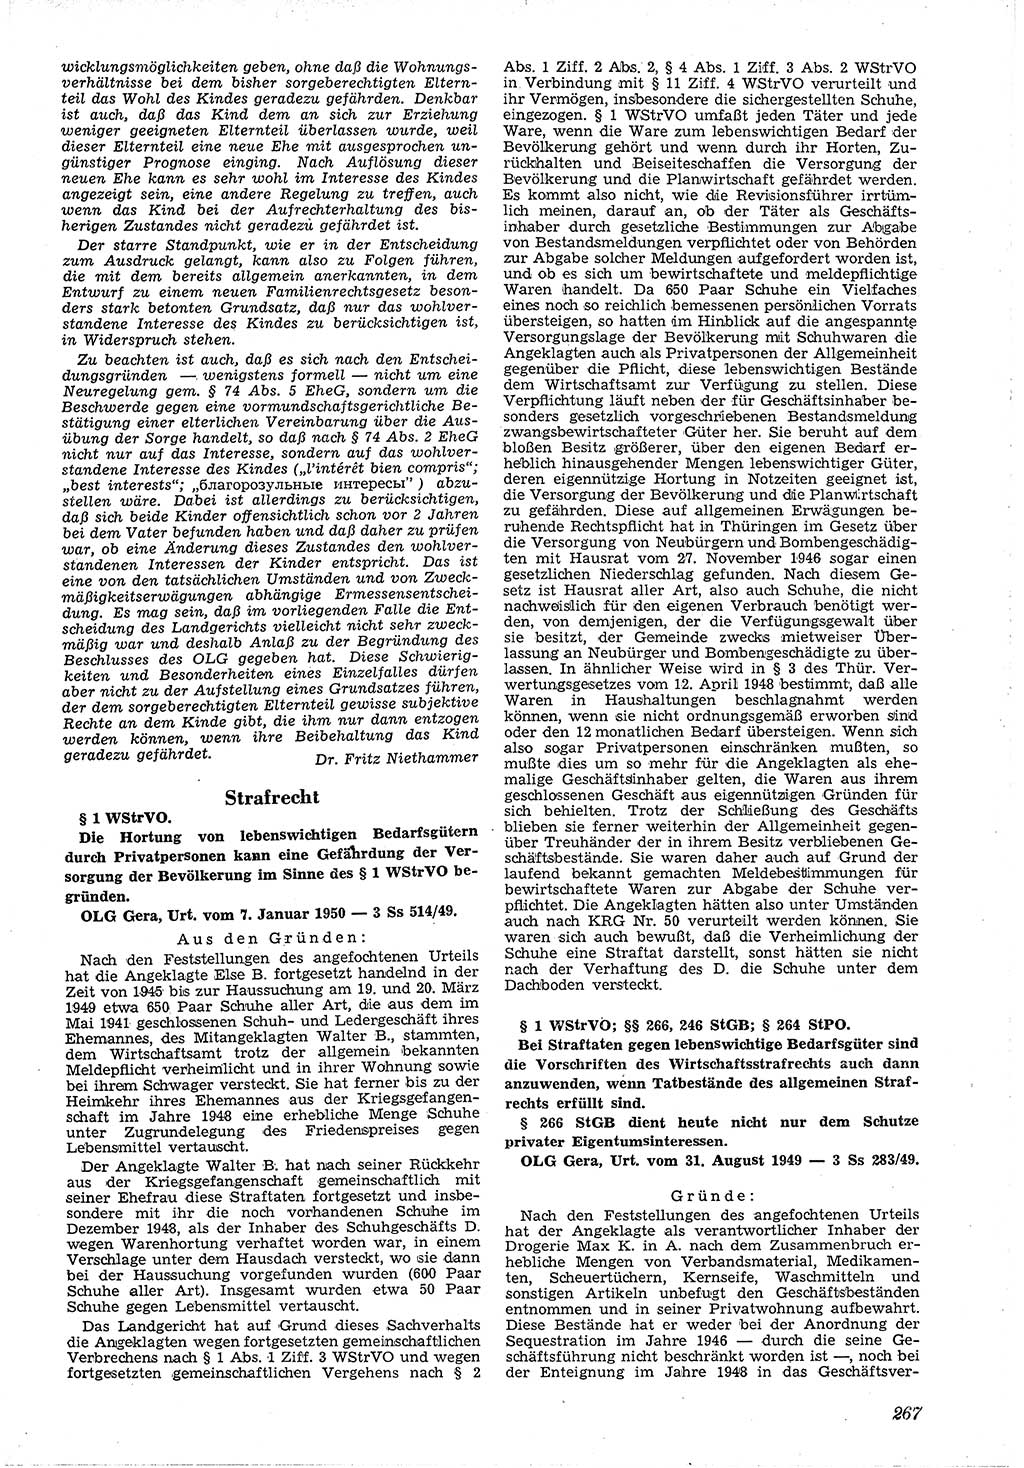 Neue Justiz (NJ), Zeitschrift für Recht und Rechtswissenschaft [Deutsche Demokratische Republik (DDR)], 4. Jahrgang 1950, Seite 267 (NJ DDR 1950, S. 267)